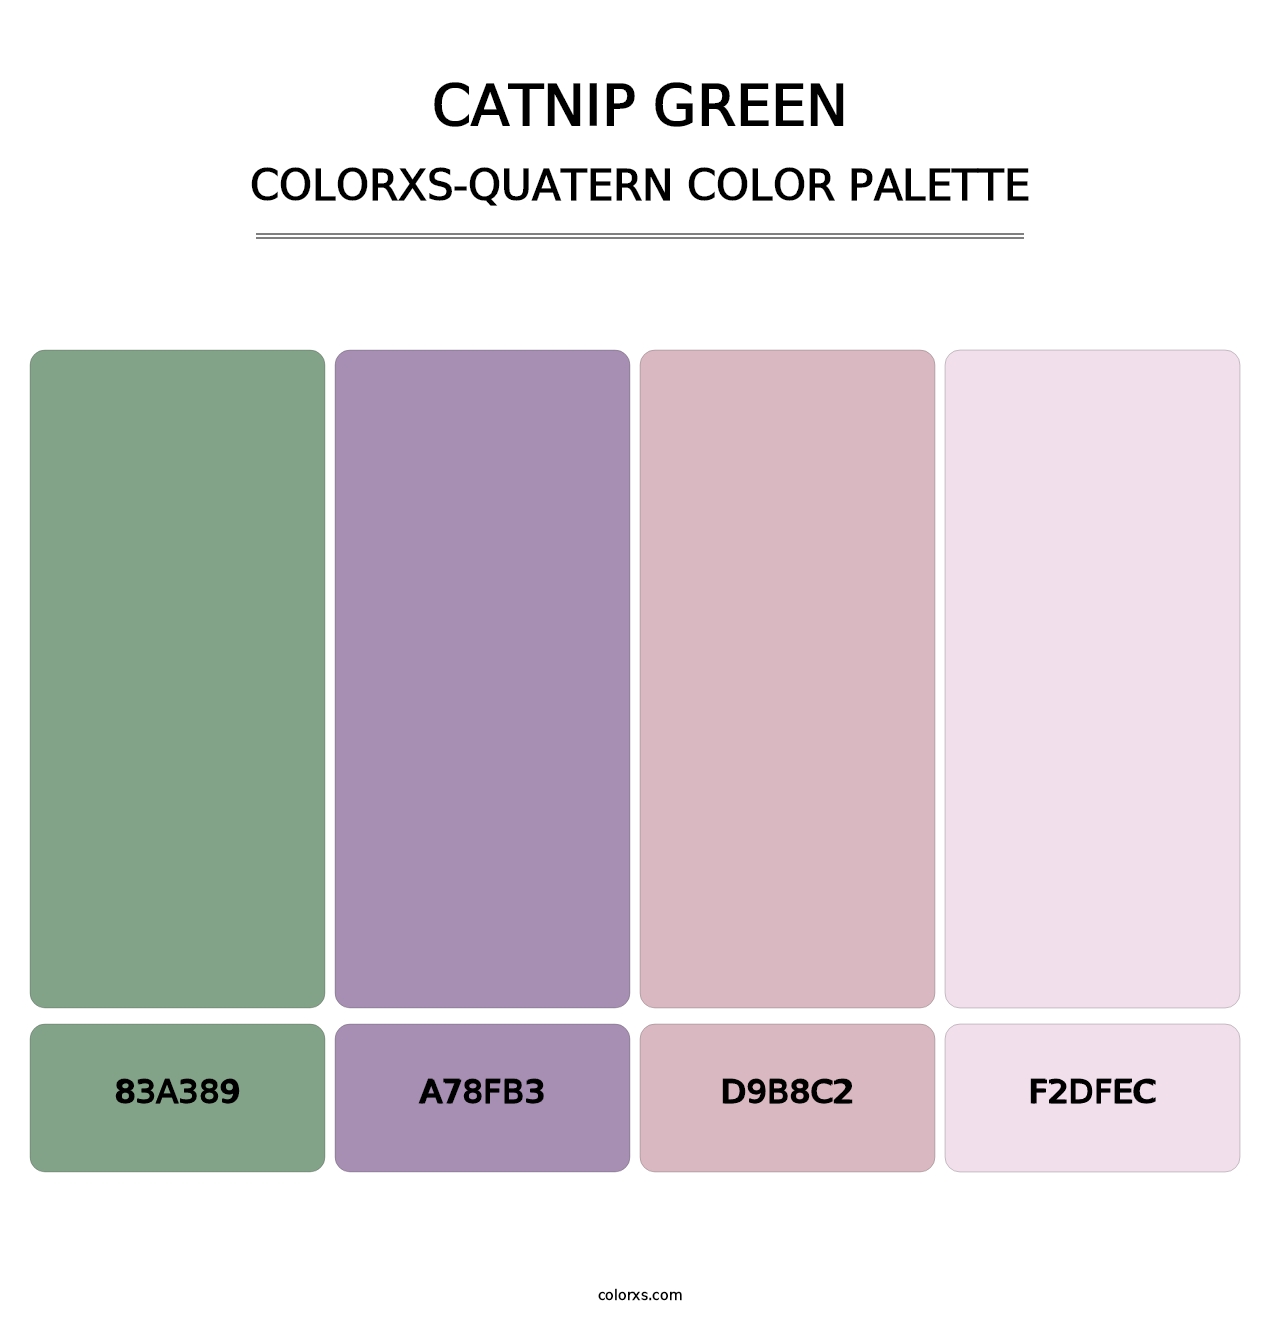 Catnip Green - Colorxs Quatern Palette